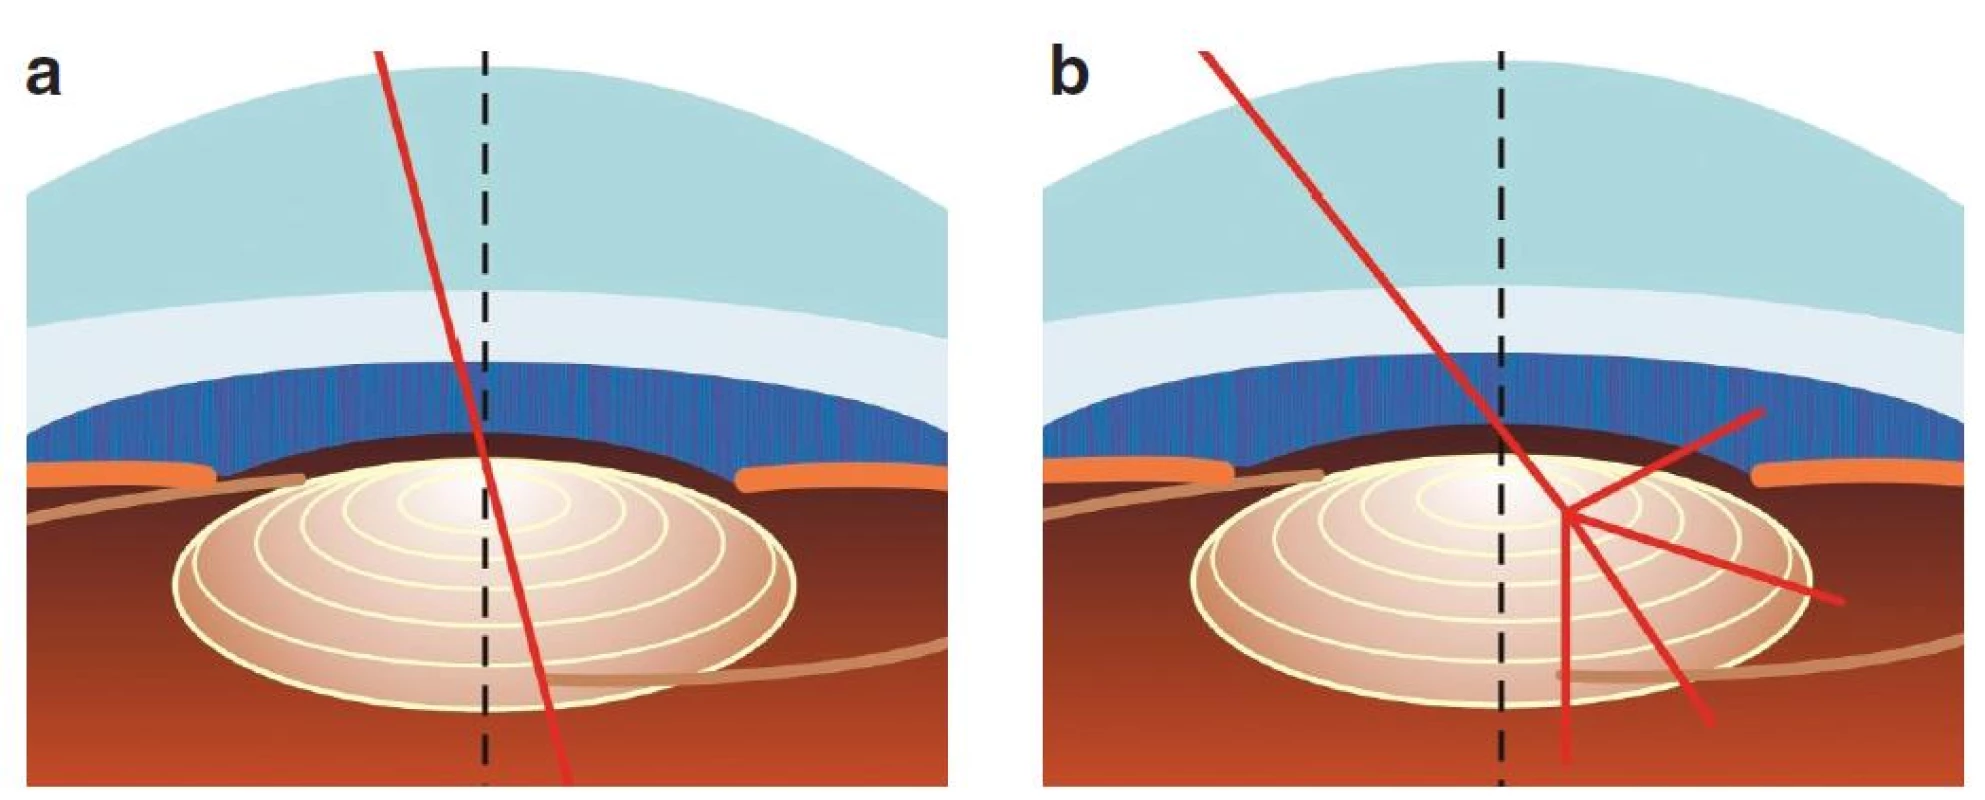 Při malém úhlu kappa prochází paprsek směřující do fovey přes centrální část čočky (a). Při velkém úhlu kappa prochází blíže hraně koncentrického prstence MIOL (b), což může způsobit výraznější fotické fenomény.